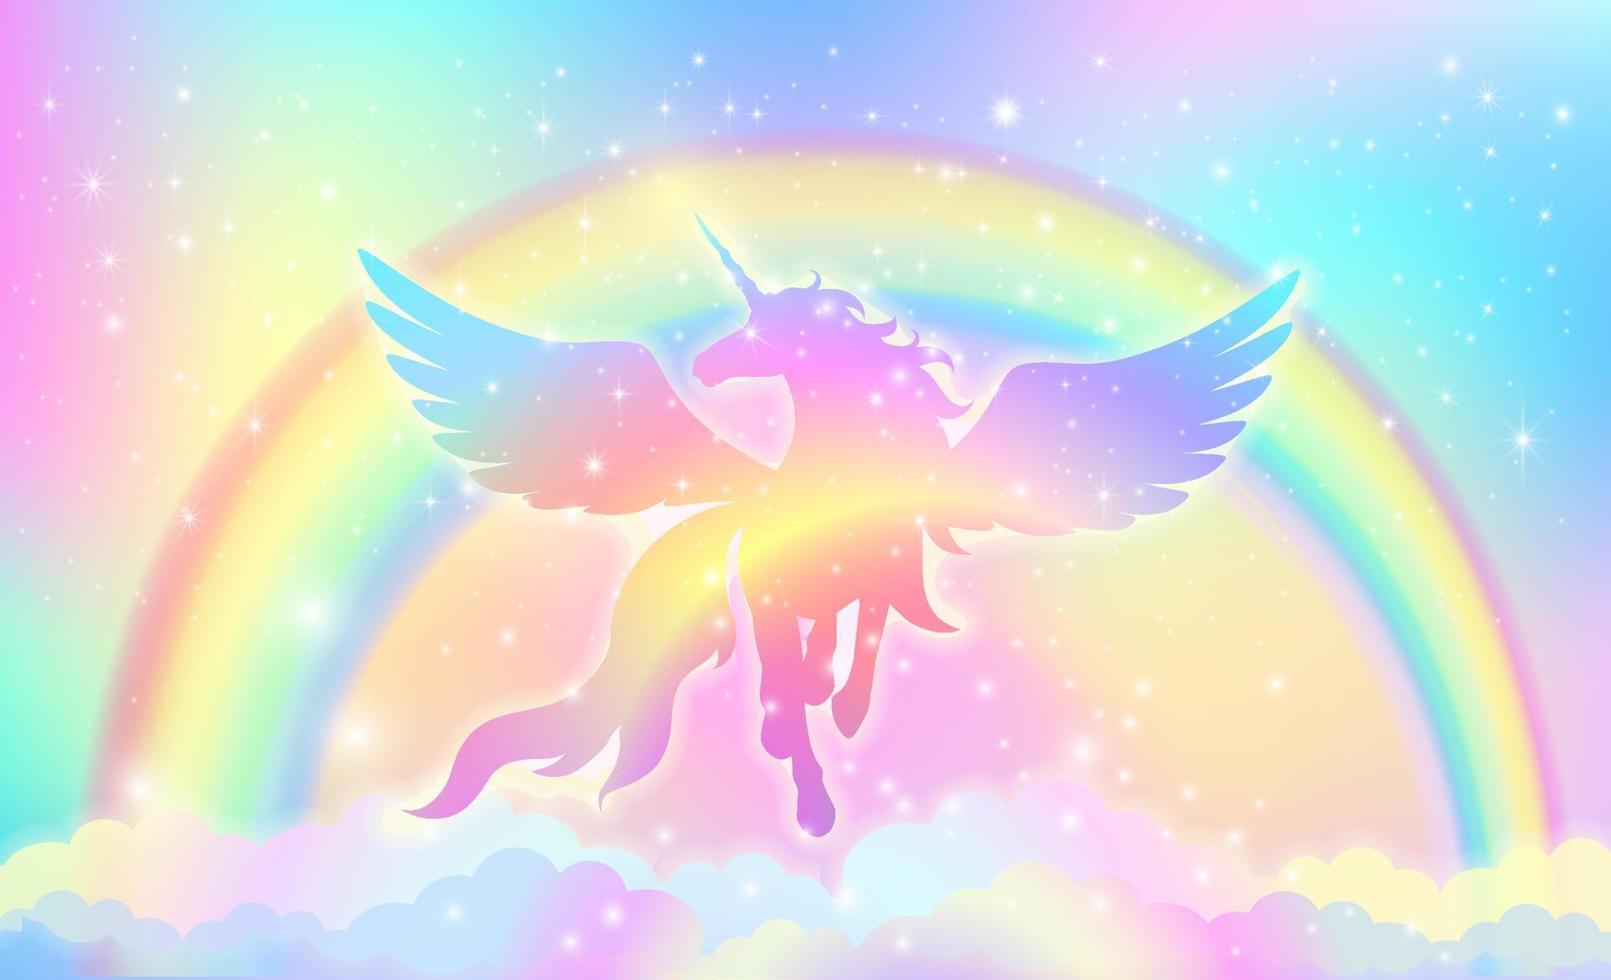 sfondo arcobaleno con sagoma di unicorno alato con le stelle. vettore